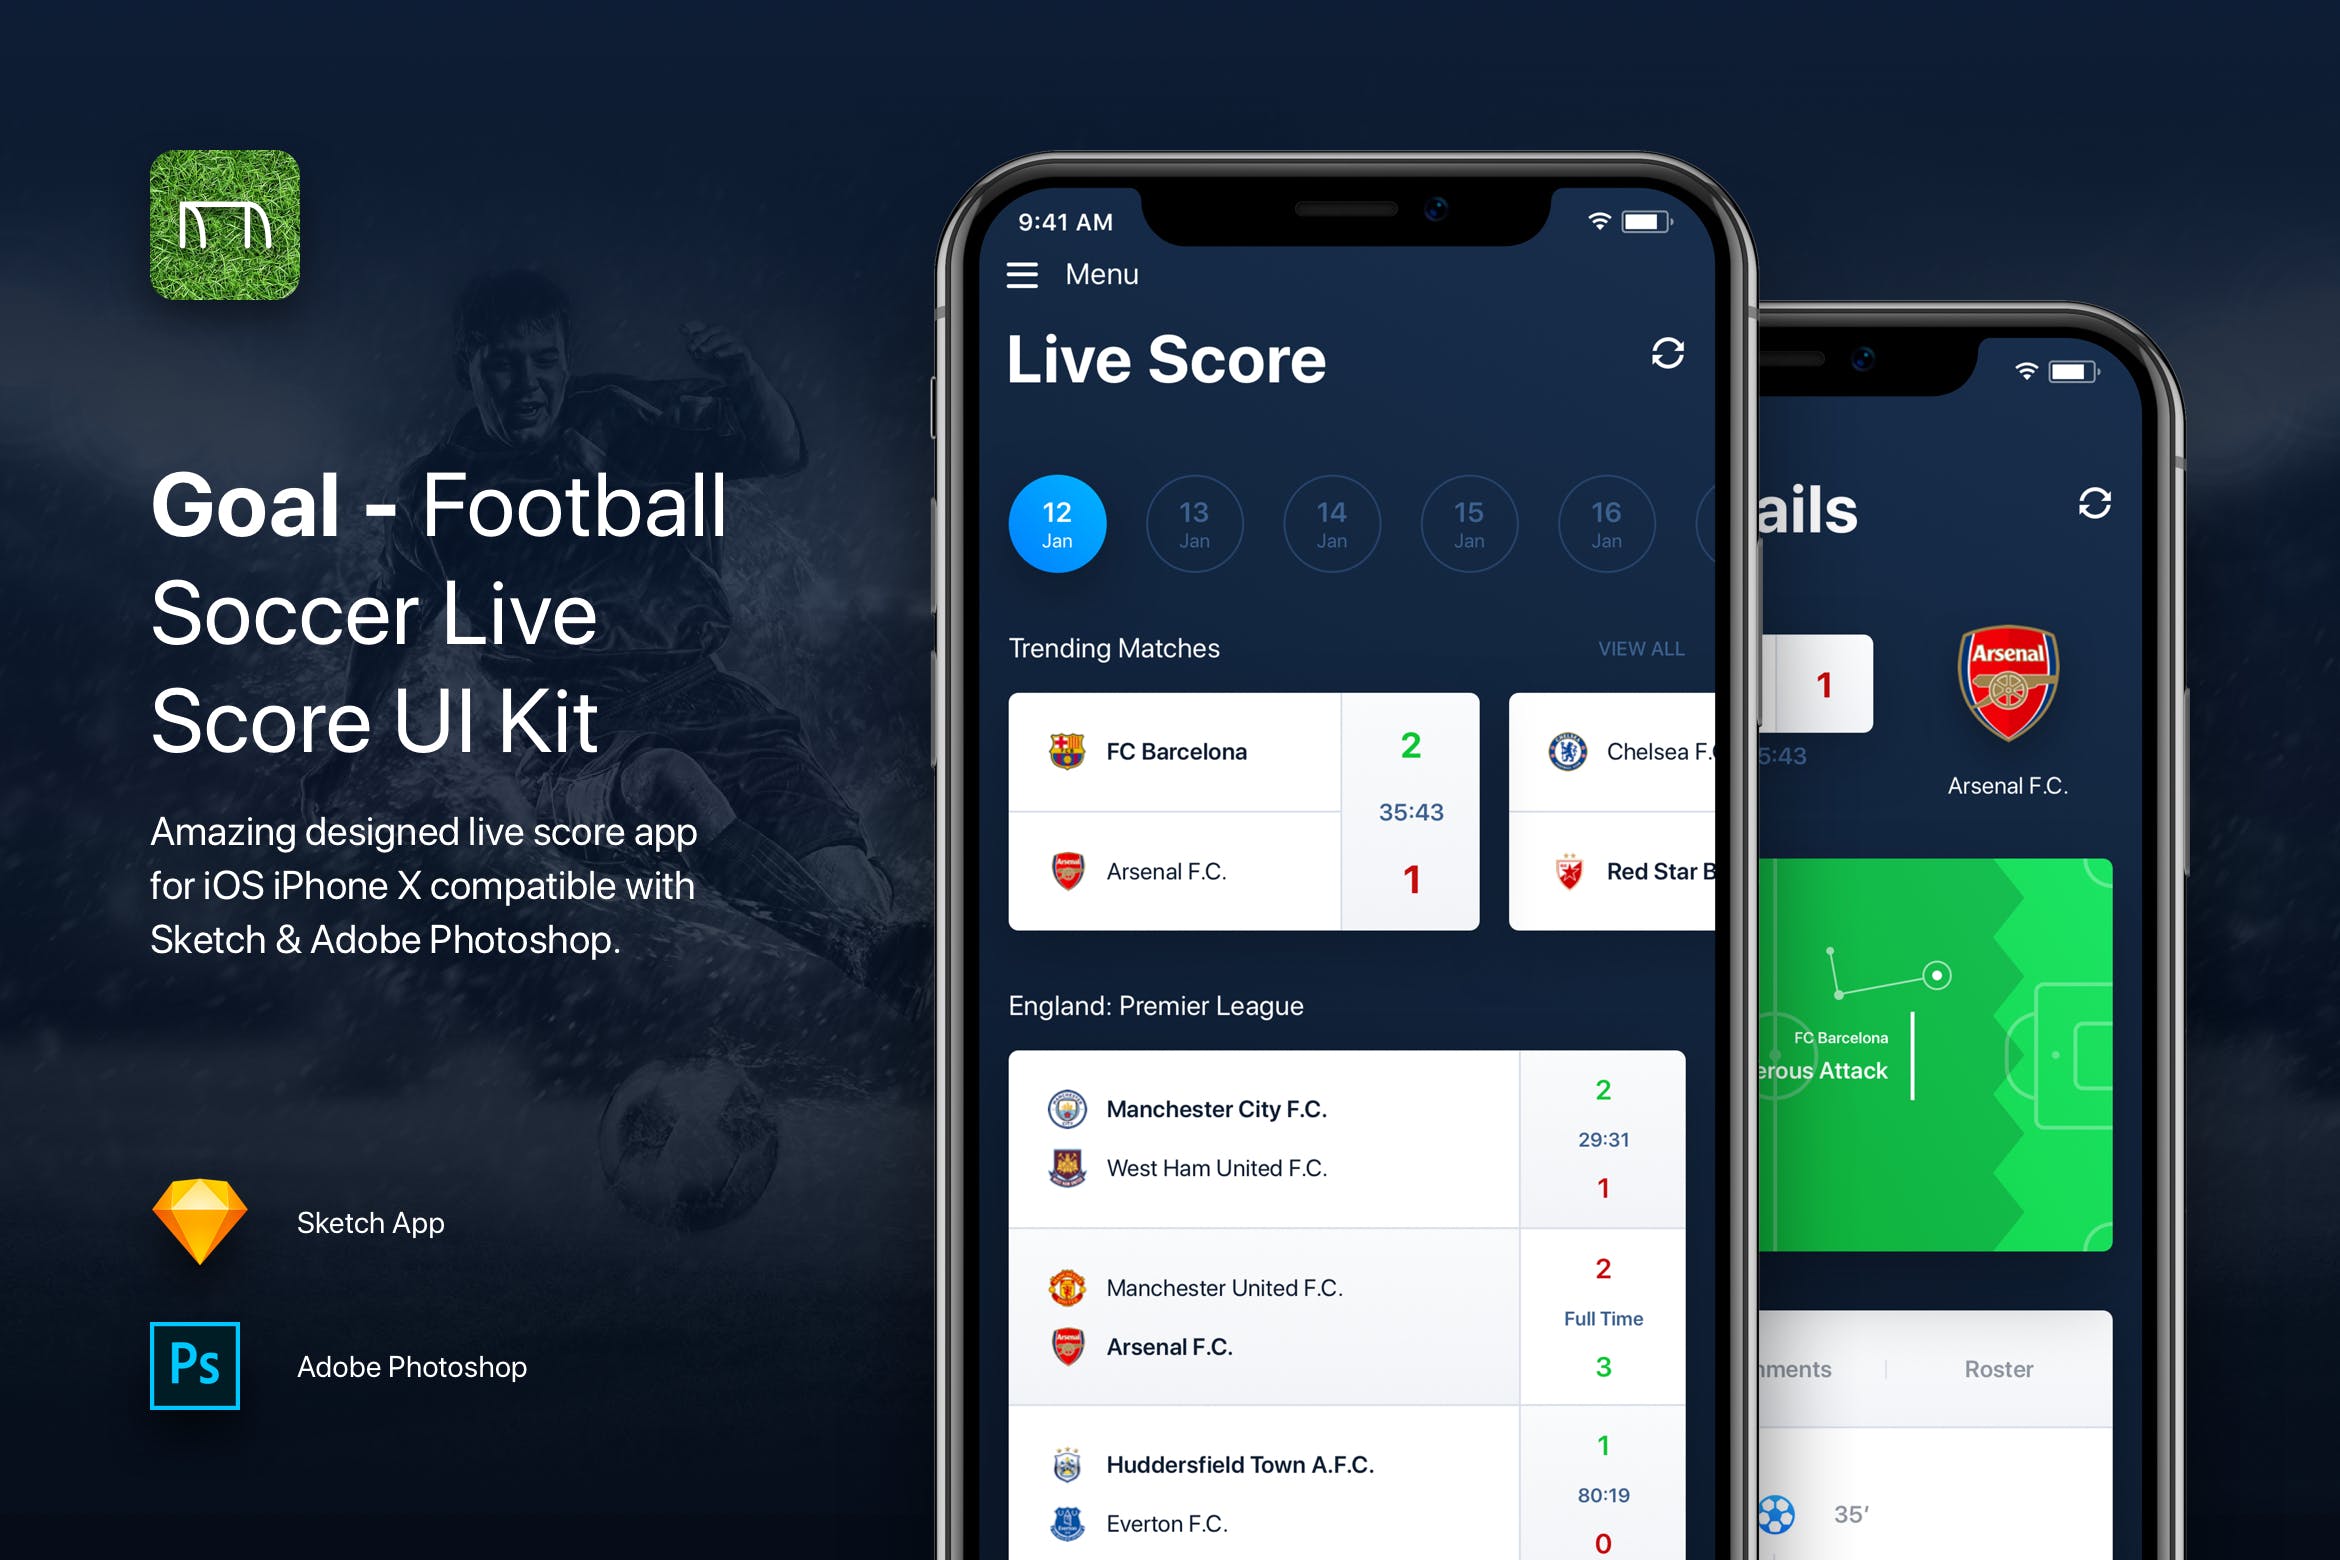 足球实时比分APP应用UI设计模板 Goal – Football Soccer Live Score UI Kit Template插图